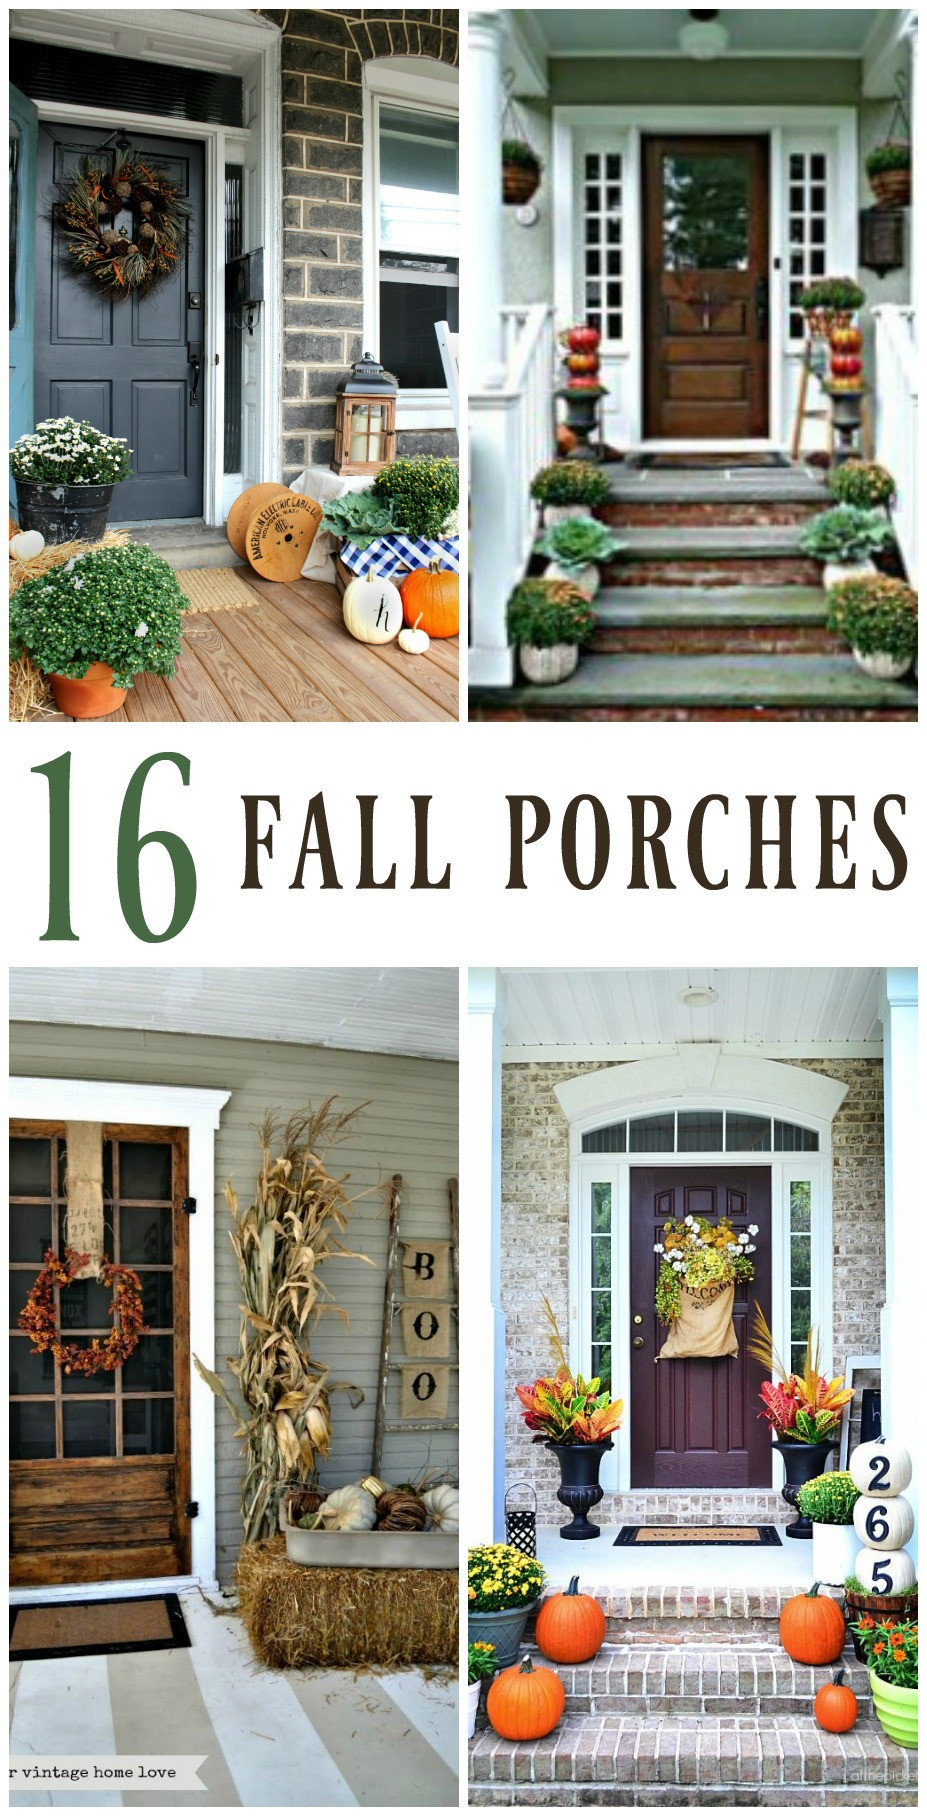 Porch Fall Decorating Ideas
 16 Inspiring Fall Porch Decorating Ideas Christinas